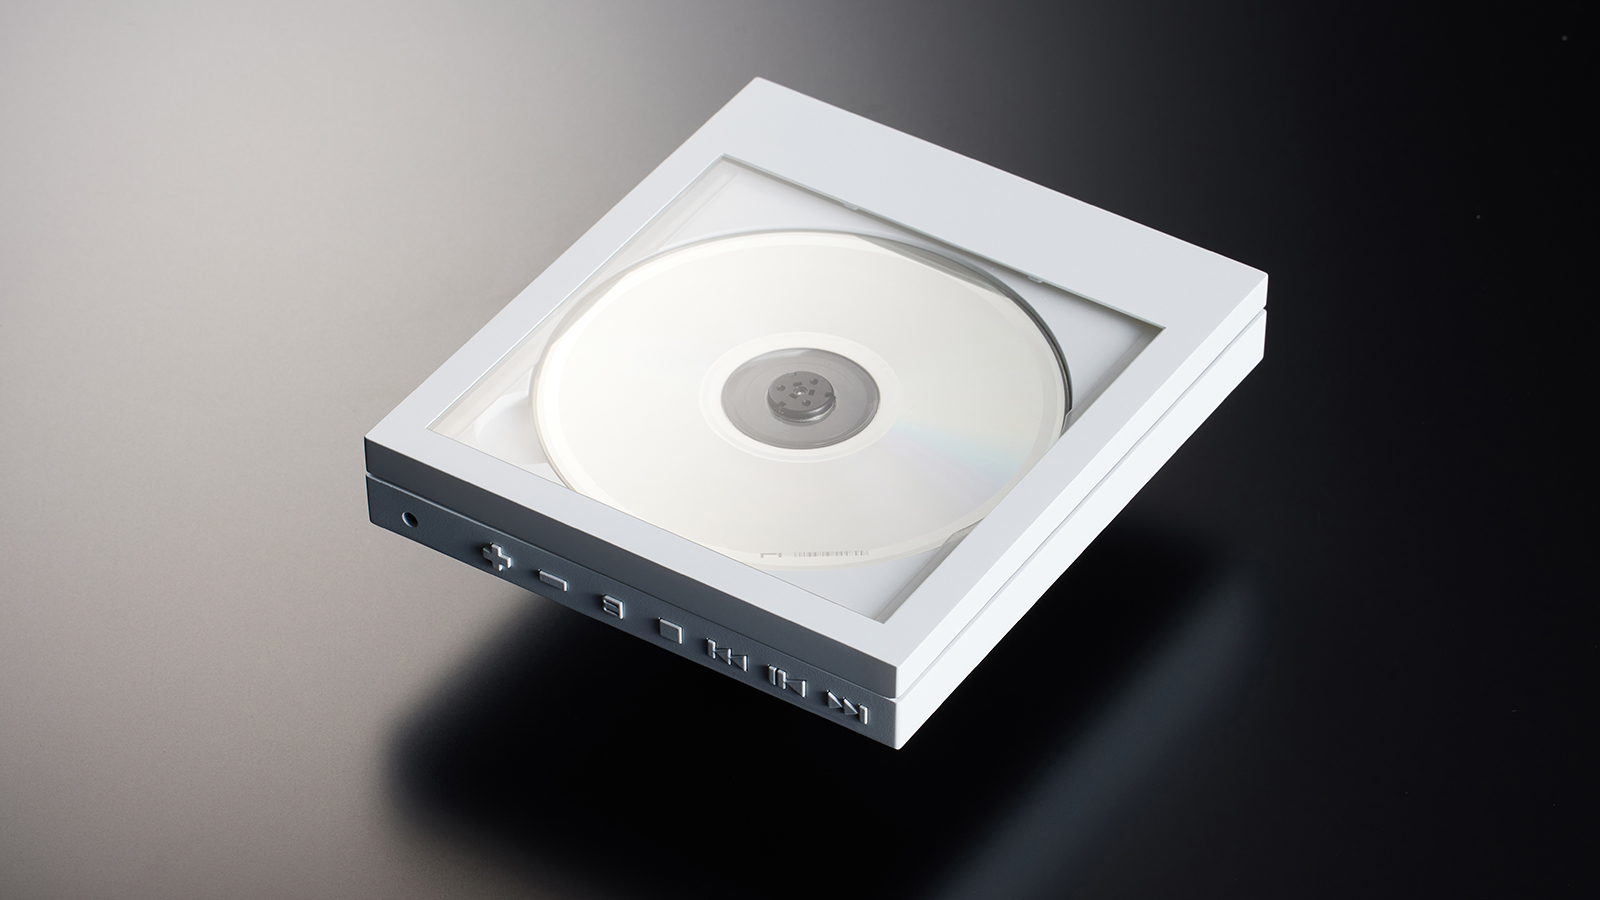 ジャケットアートを愉しむための CDプレーヤー「Instant Disk Audio CP1」 | Webマガジン「AXIS」 |  デザインのWebメディア